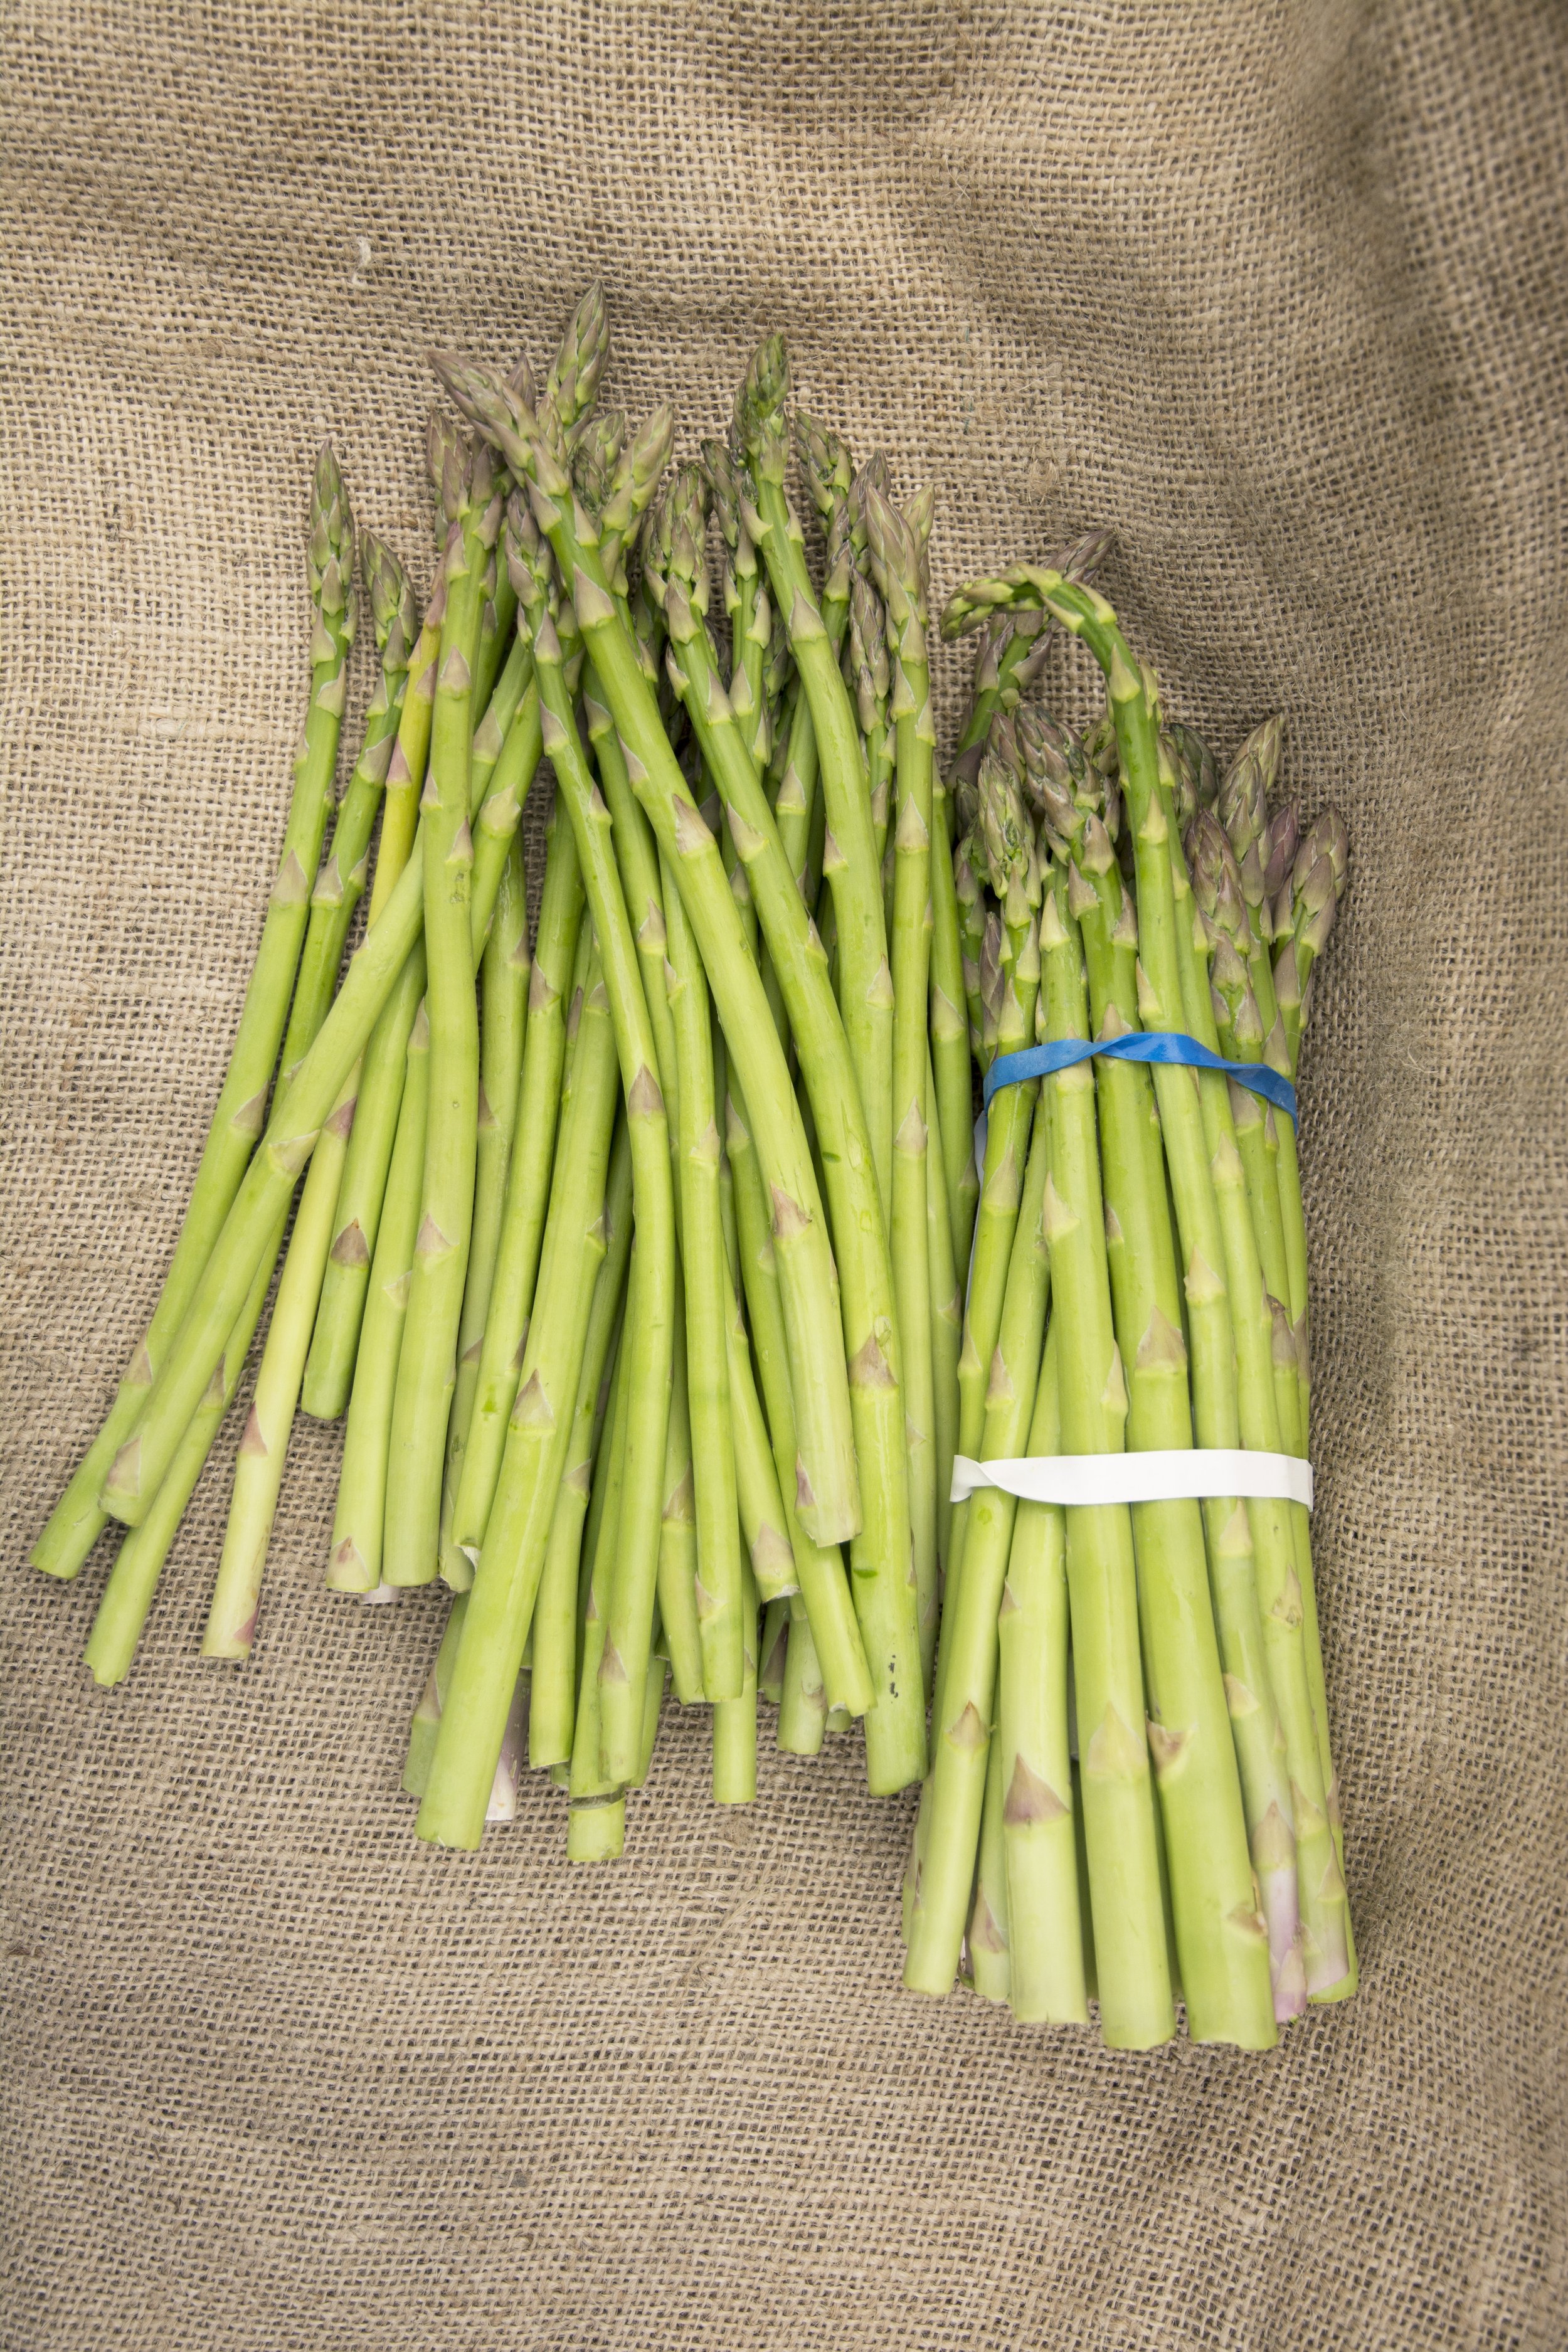 NW Asparagus $5.99/lb